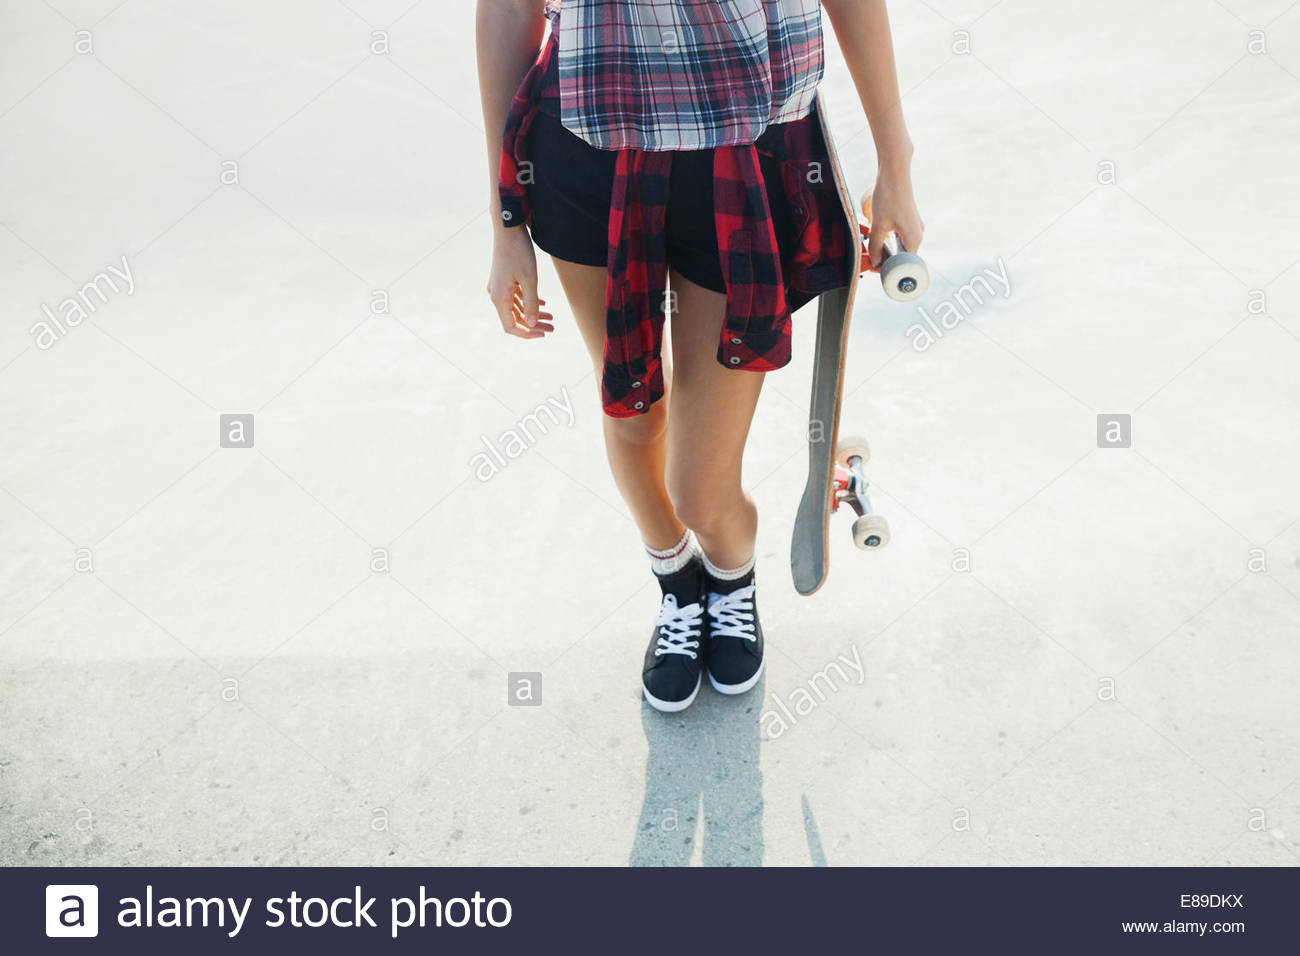 Geringer Teil der Teenager-Mädchen halten skateboard Stockfoto